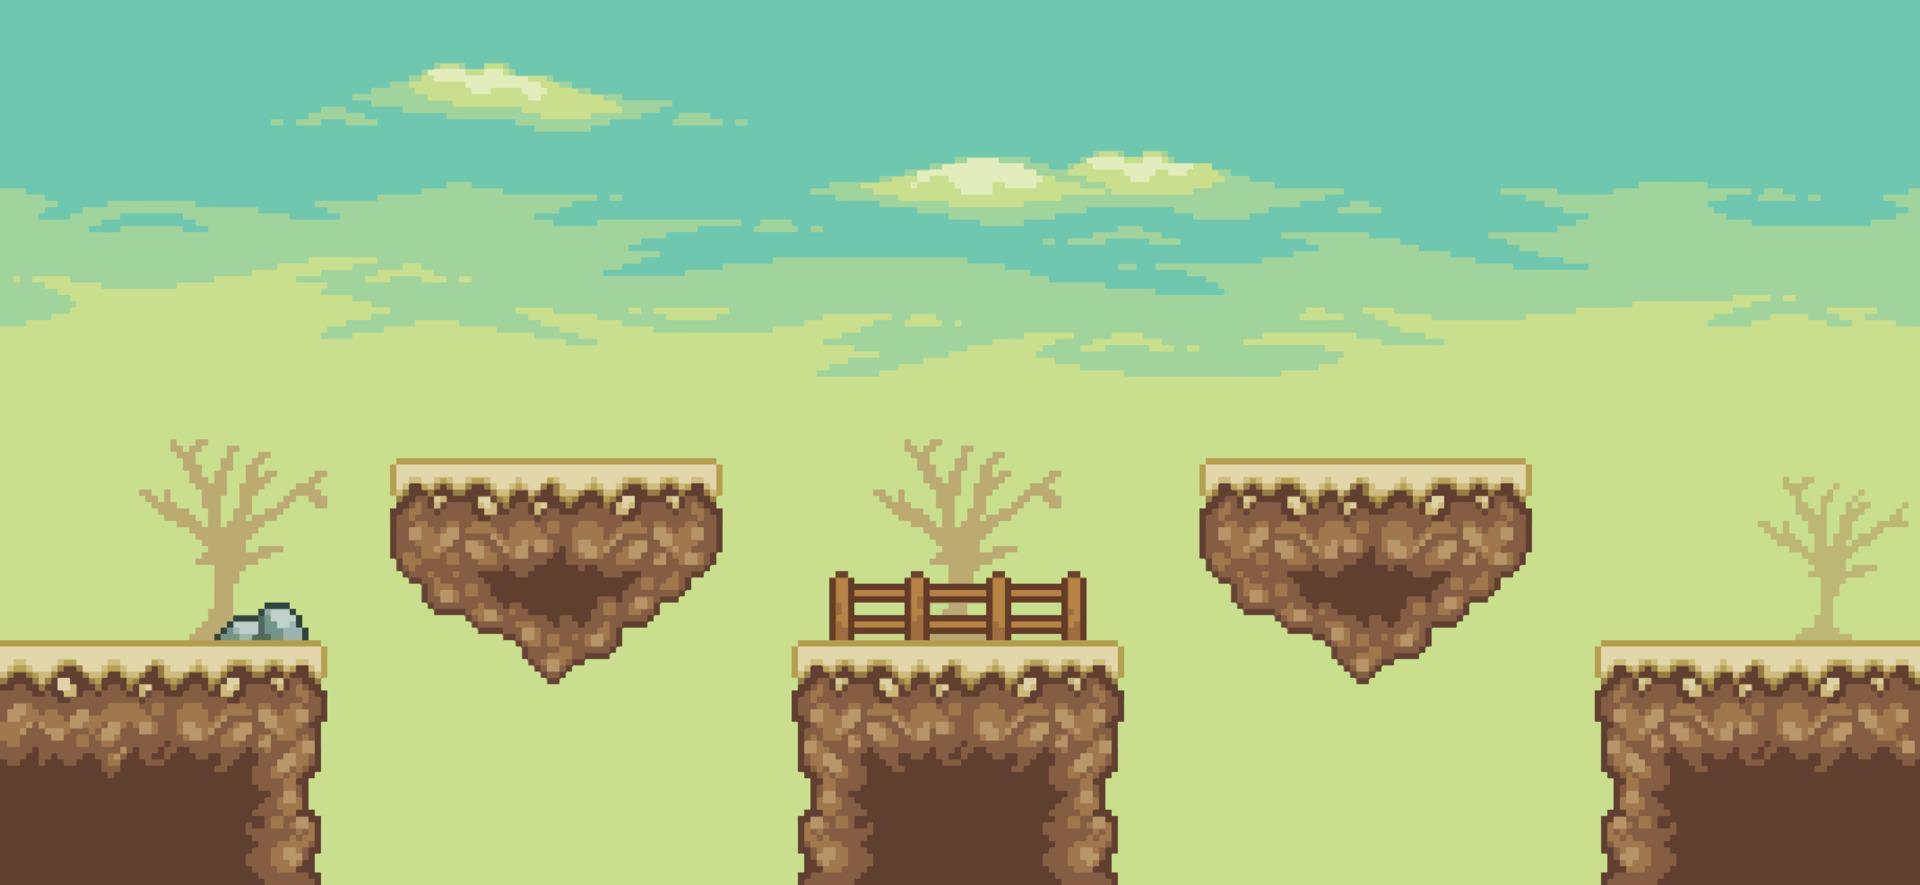 escena del juego del desierto de pixel art con isla flotante, palmera, cactus, fondo de árbol de 8 bits vector